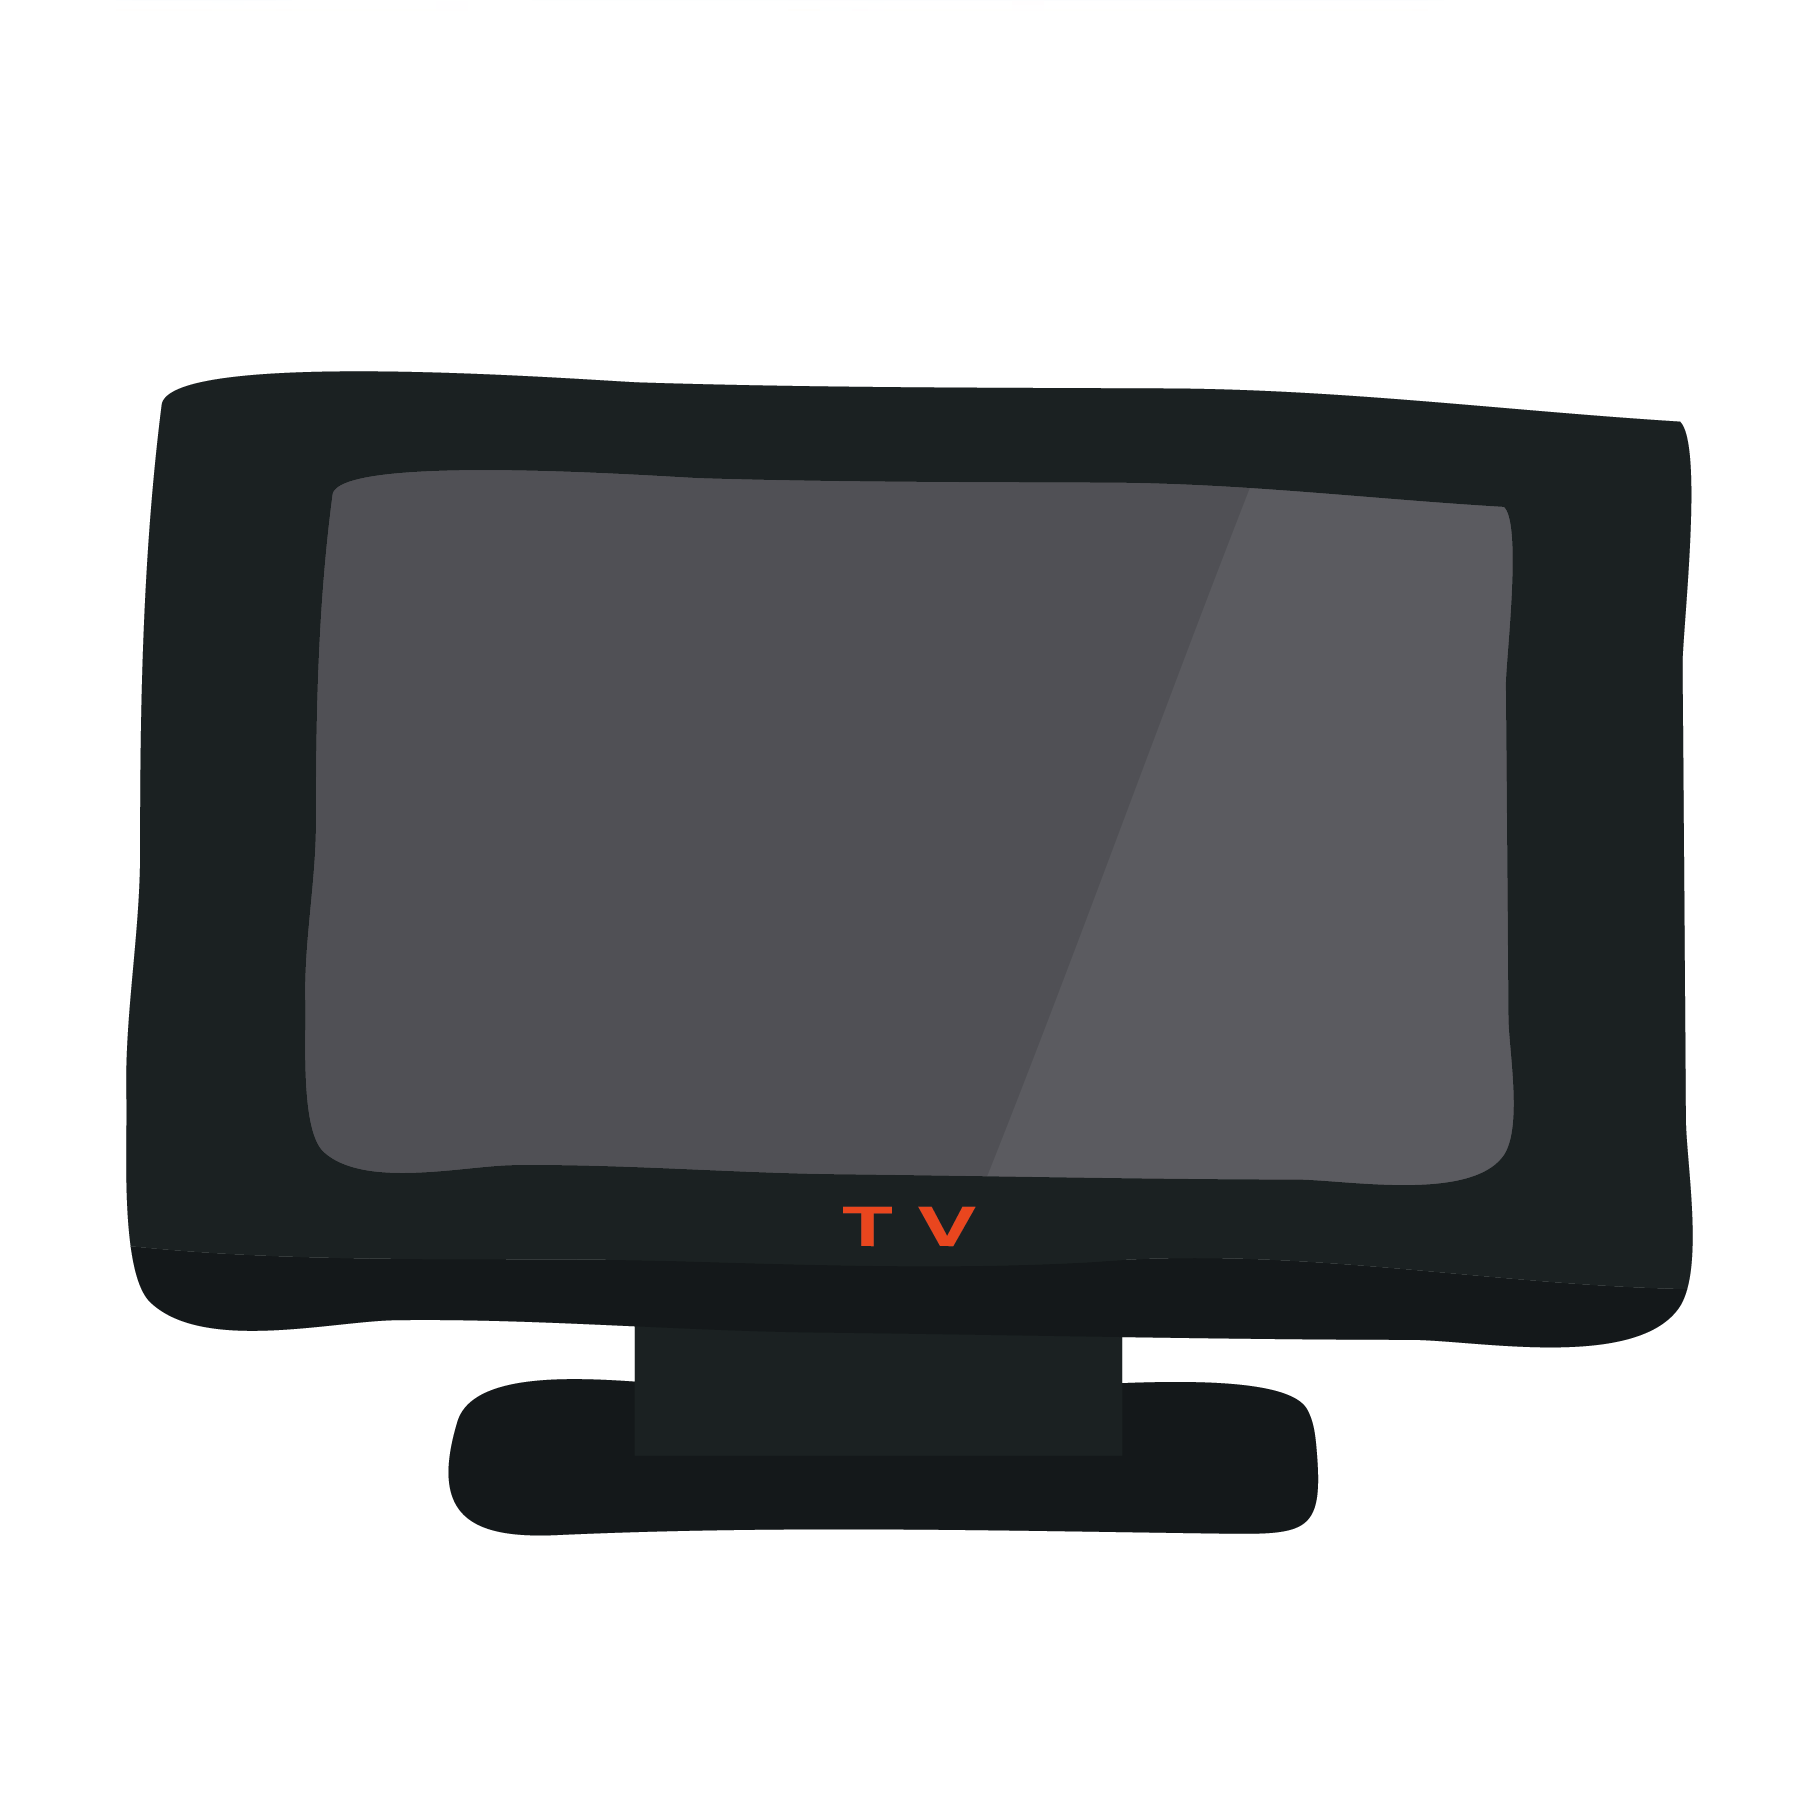 テレビ てれび Tv のイラスト 電化製品 商用フリー 無料 の